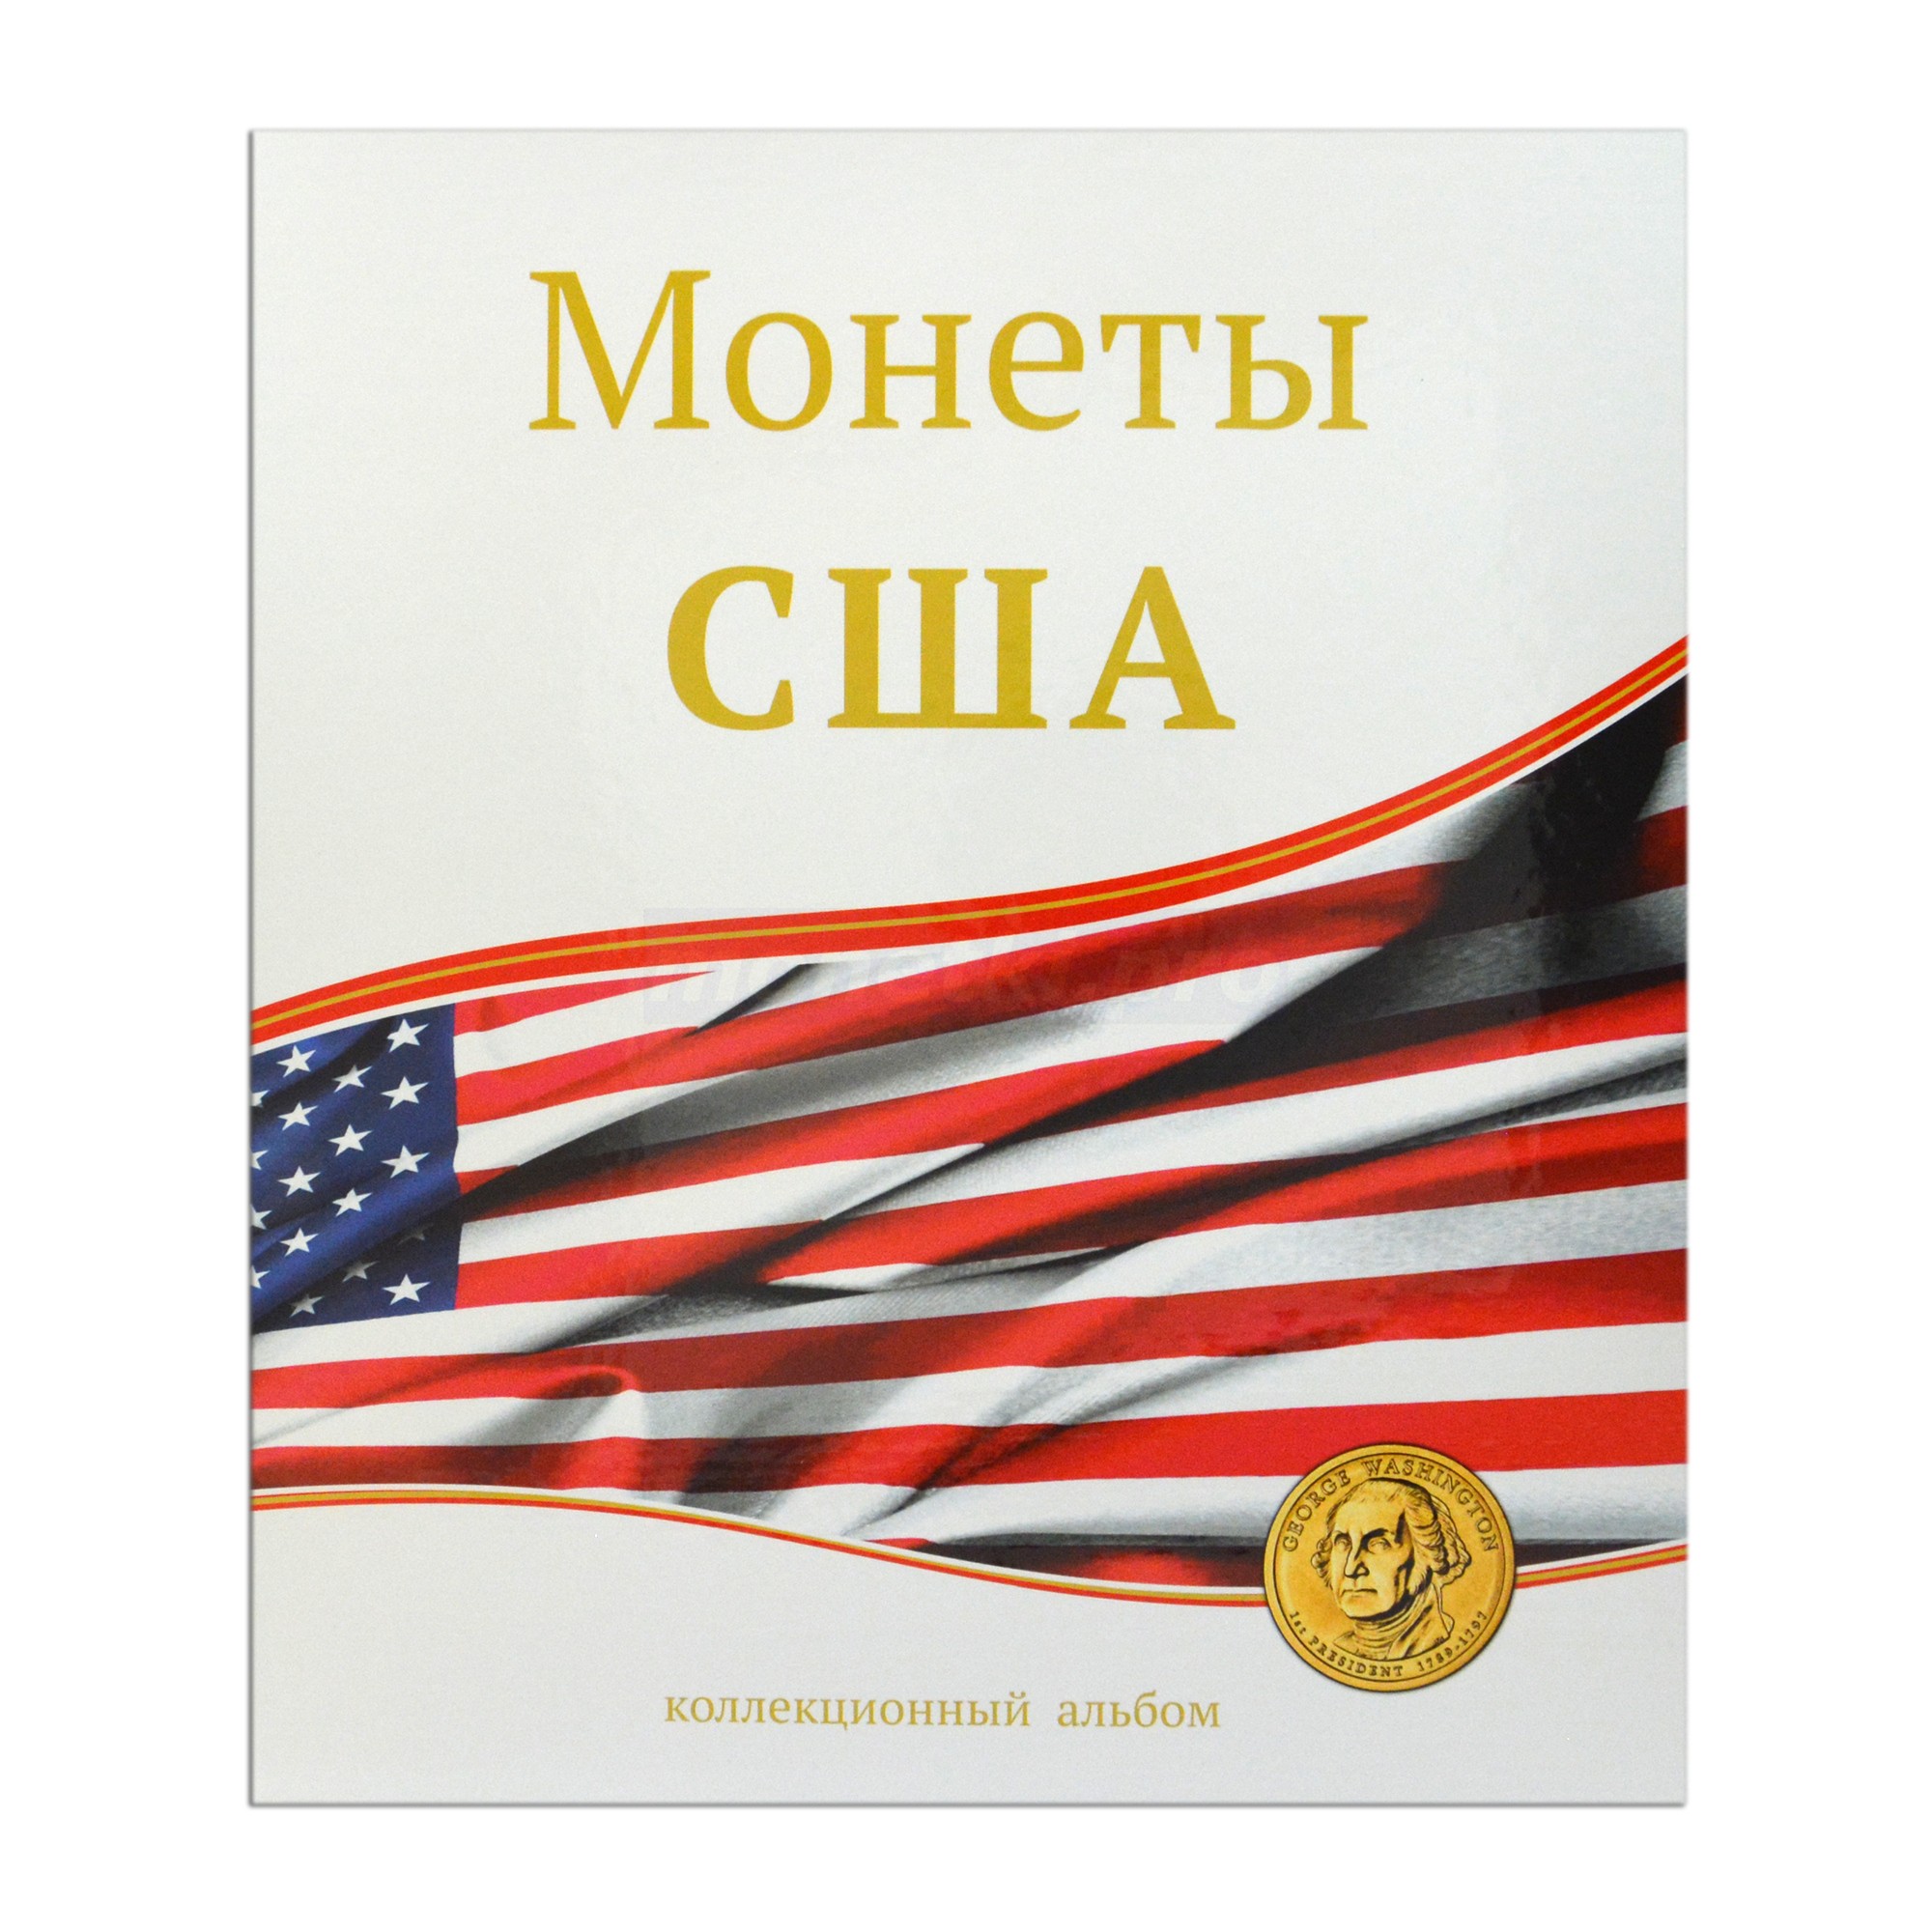 Альбом (папка) для монет "Монеты США", формат Оптима (Optima), Толщина корешка: 50 мм, Папки для: Монет США, Материал: Ламинированный картон, фото 